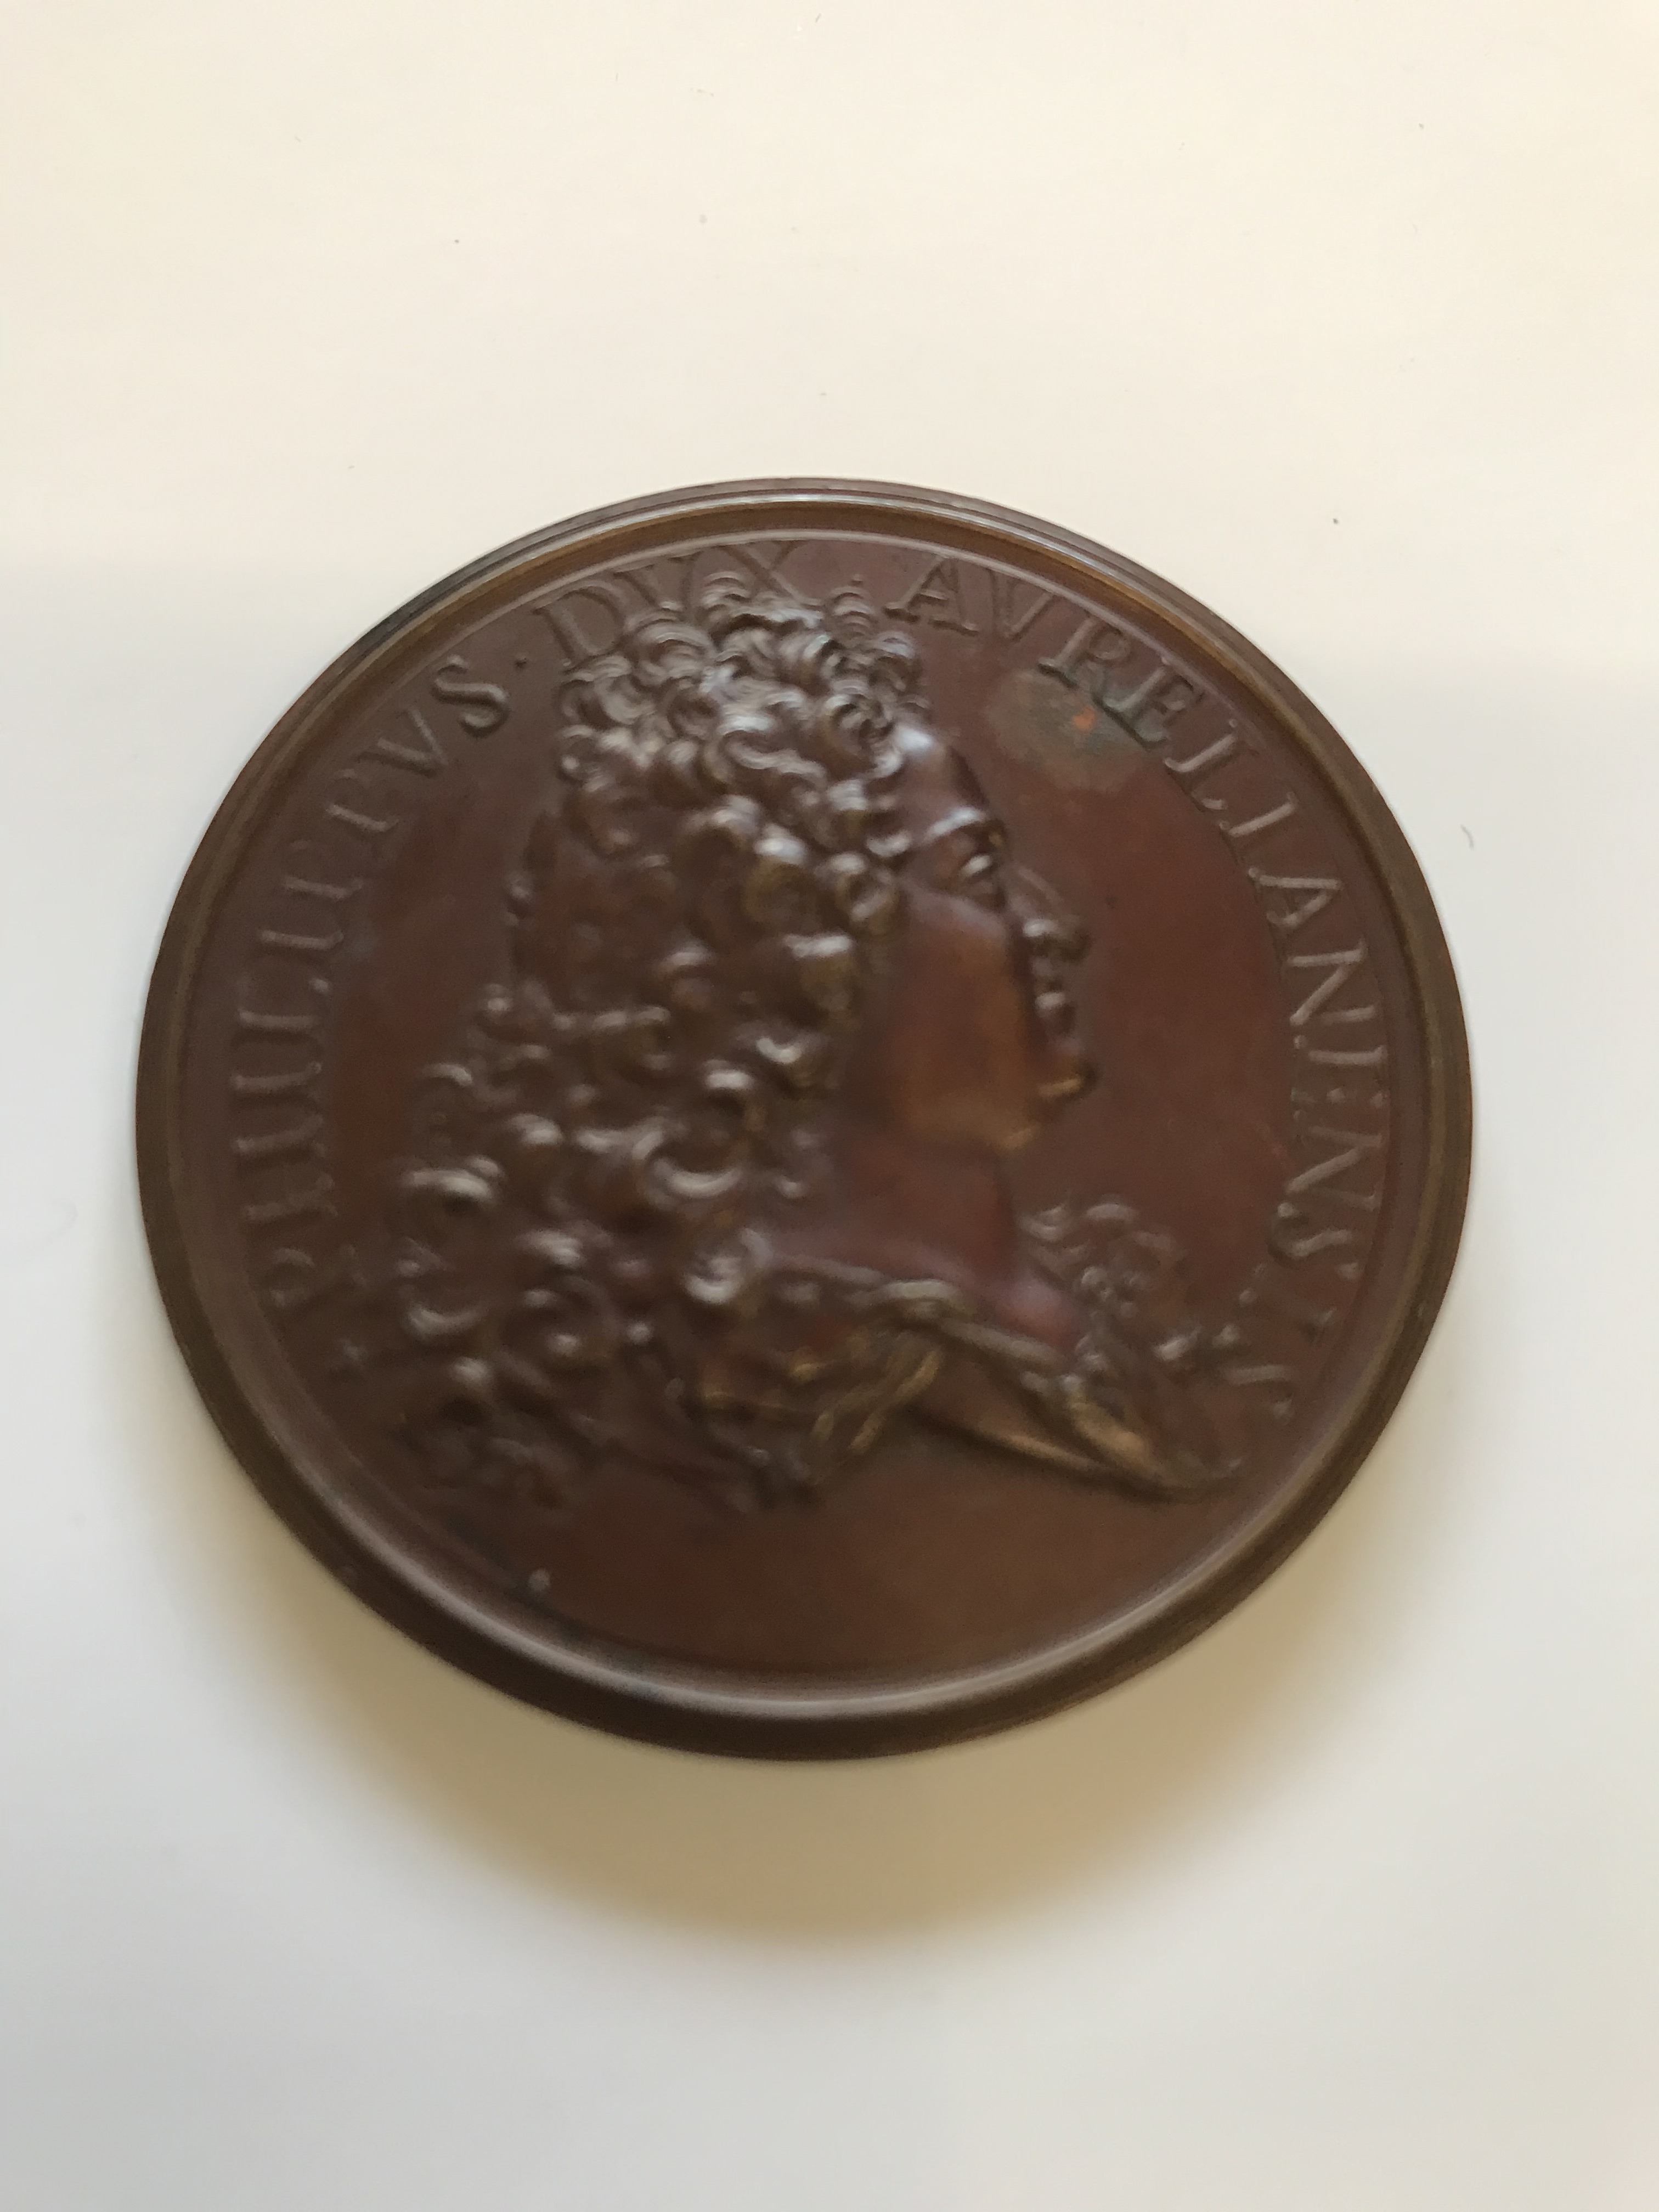 FERDINAND DE ST URBAIN: MEDALLION CELEBRATING THE DUKE OF ORLEANS. A bronze medallion, obverse: